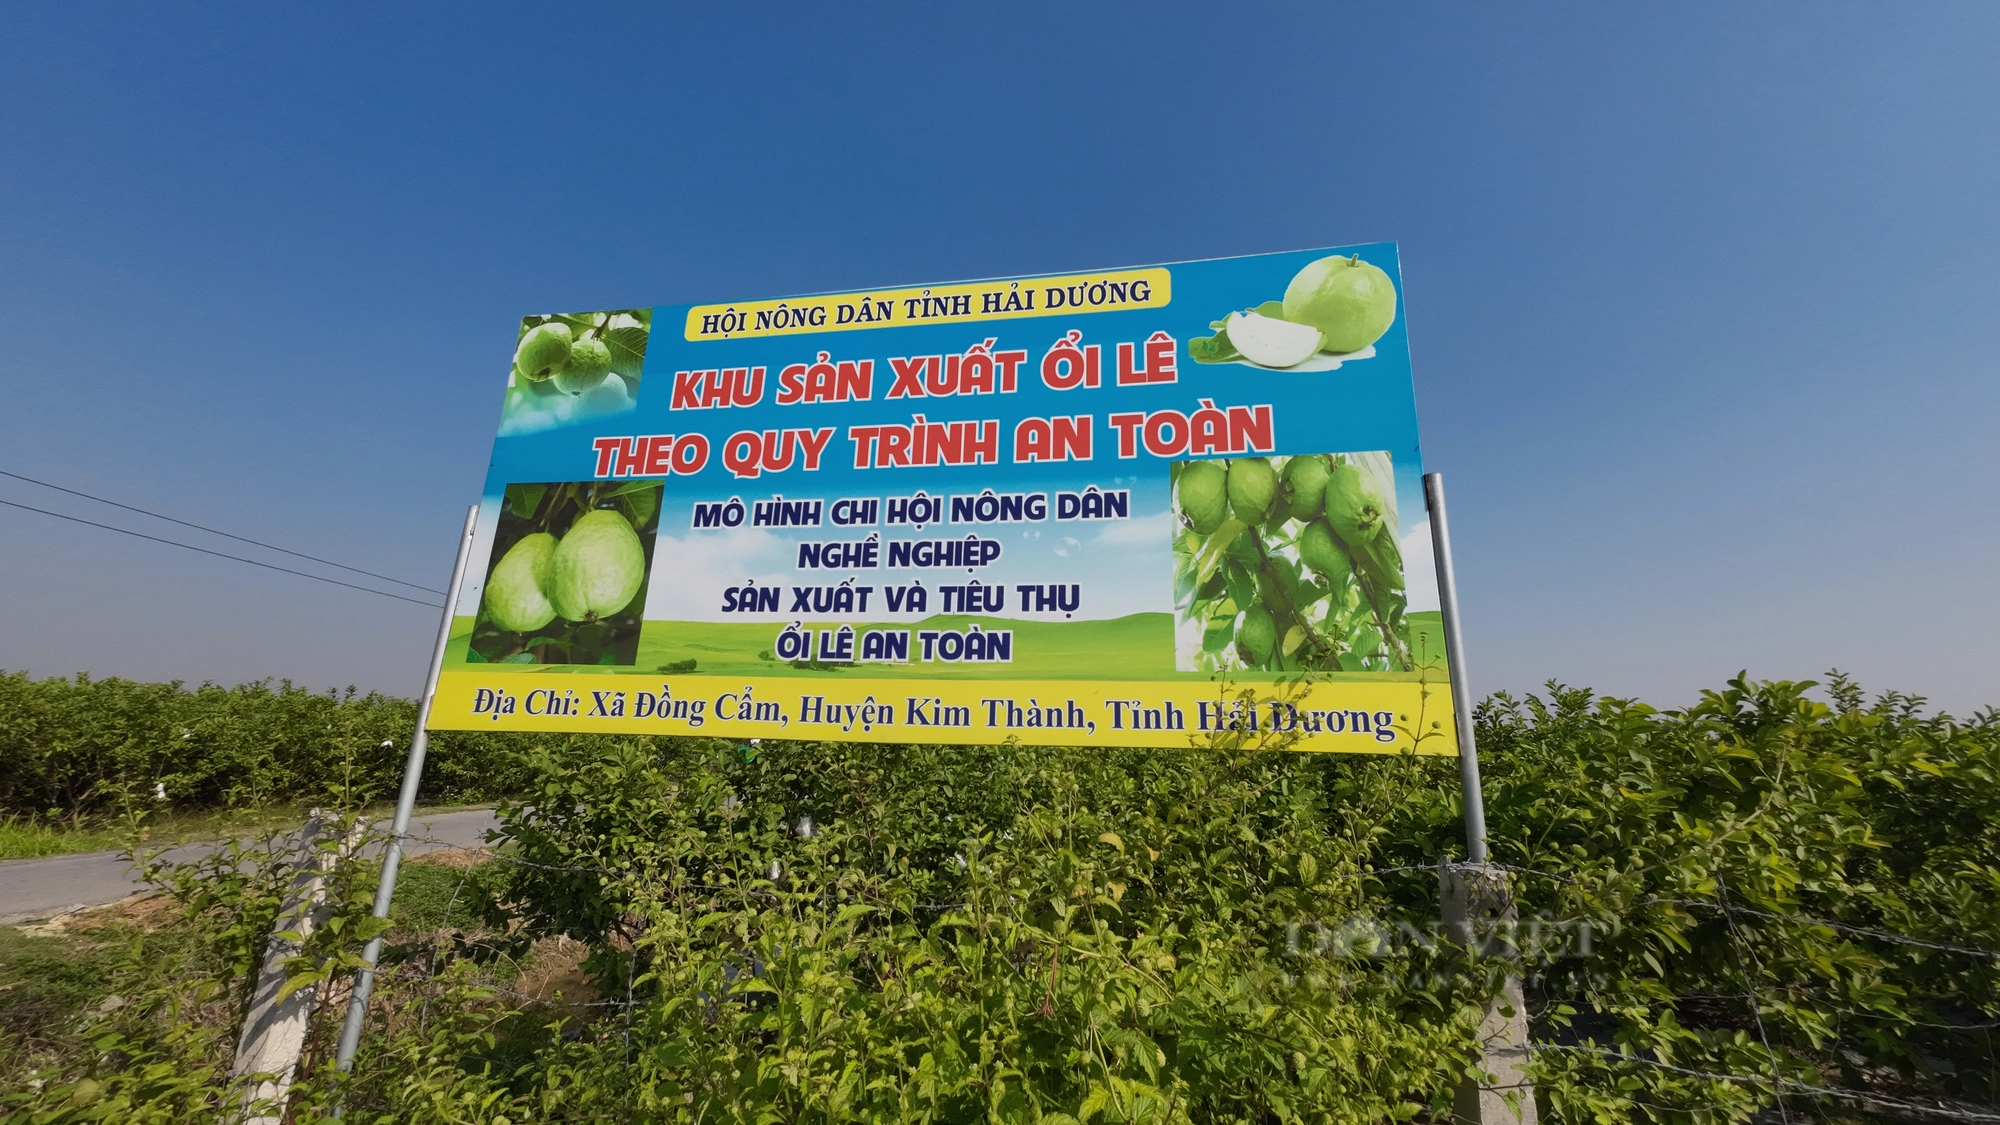 Chuyển đổi sang trồng ổi lê ngọt thơm, nông dân Đồng Cẩm ở Hải Dương vừa đỡ vất vả lại thu nhập cao - Ảnh 2.